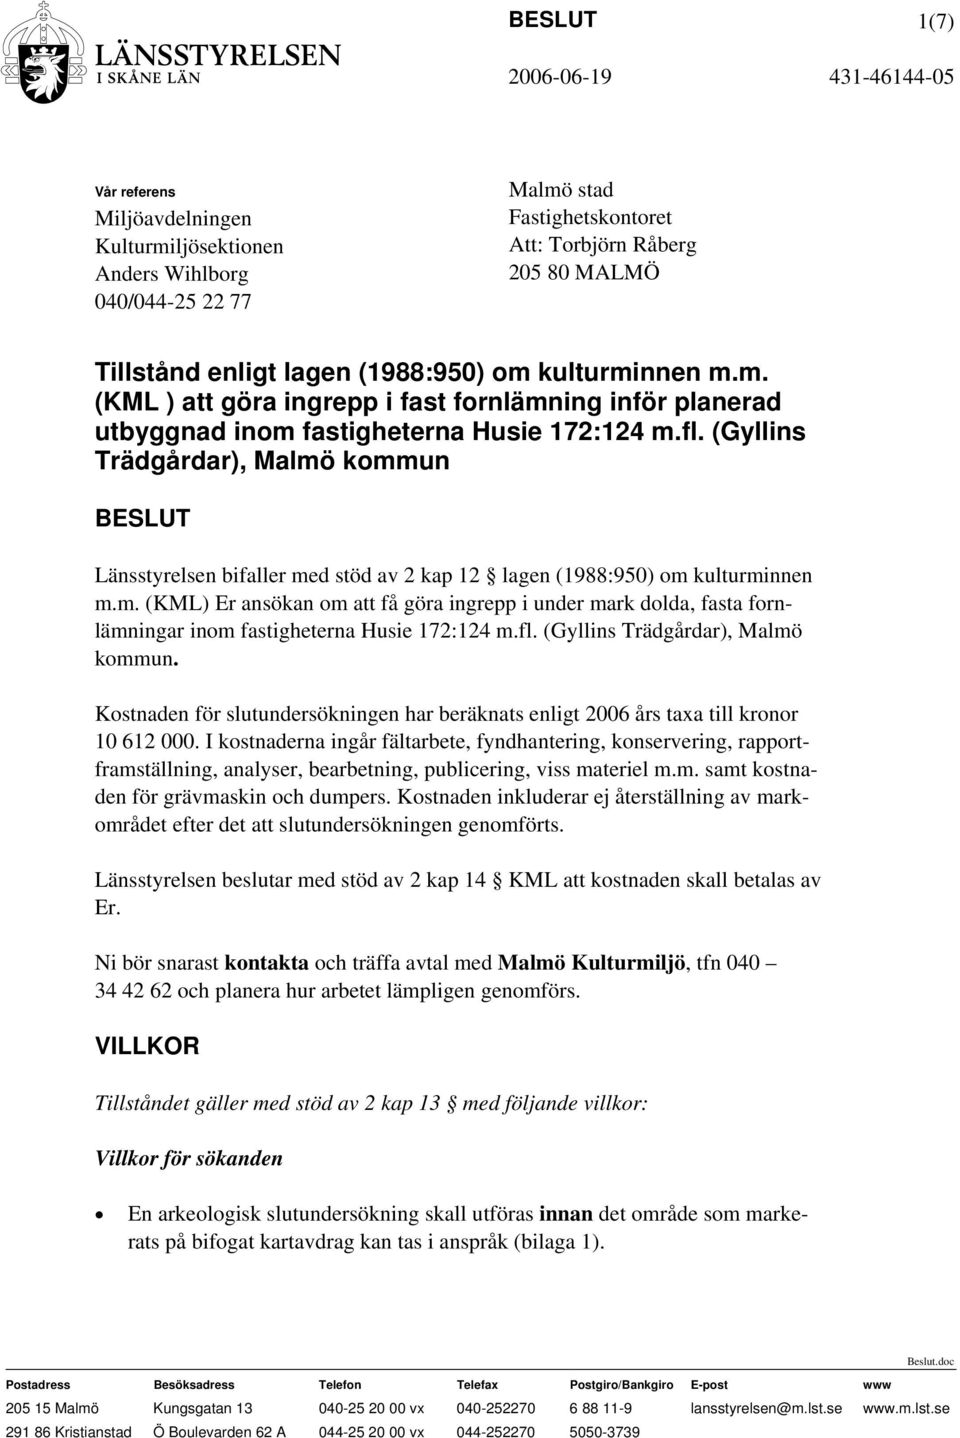 (Gyllins Trädgårdar), Malmö kommun BESLUT Länsstyrelsen bifaller med stöd av 2 kap 12 lagen (1988:950) om kulturminnen m.m. (KML) Er ansökan om att få göra ingrepp i under mark dolda, fasta fornlämningar inom fastigheterna Husie 172:124 m.